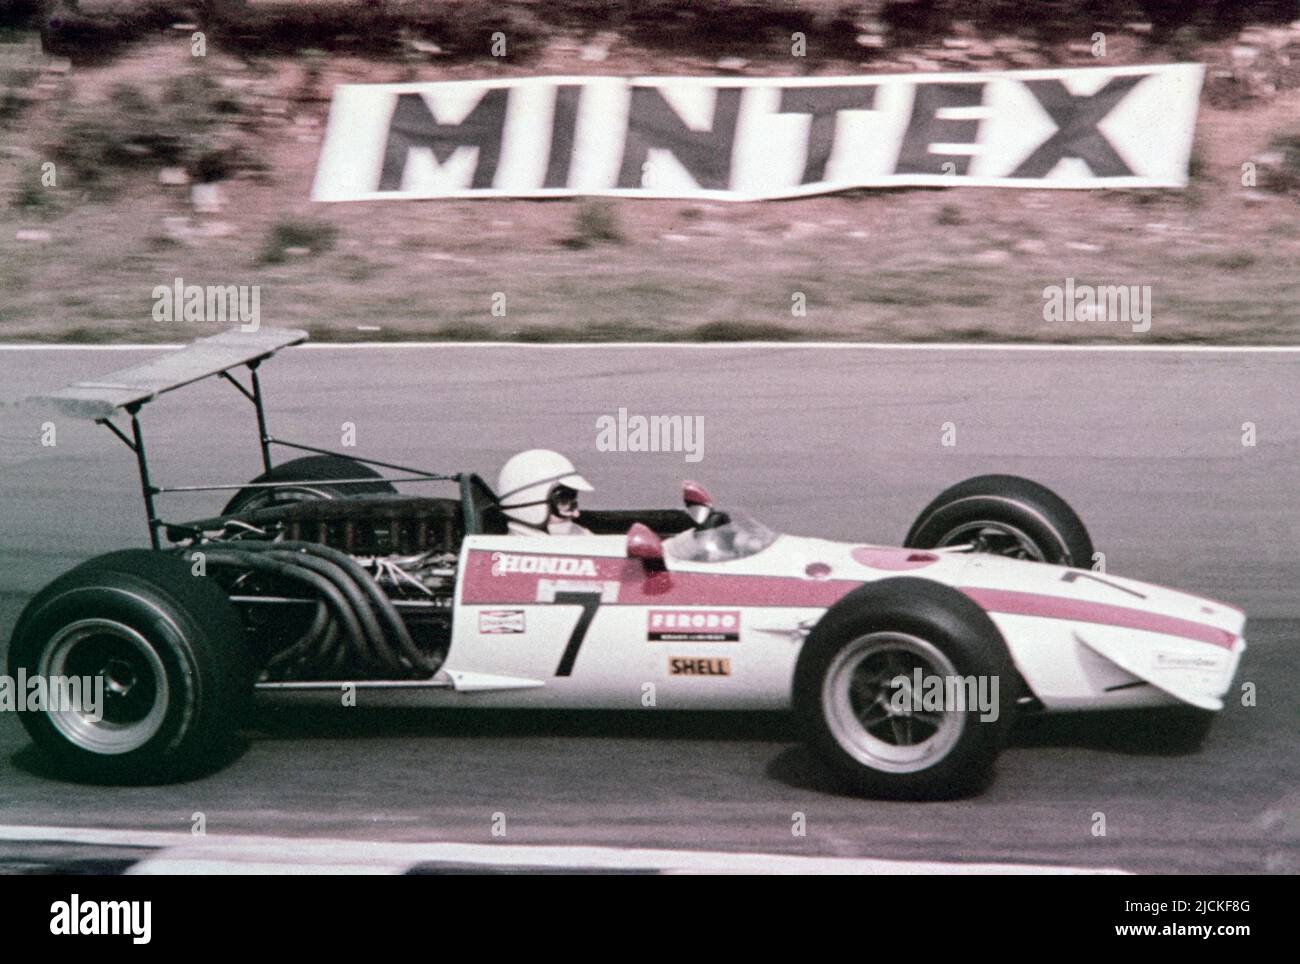 Grand Prix de Formule 1 de Grande-Bretagne 1968 à Brands Hatch. John Surtees pilotant l'écurie Honda Racing Team Honda RA301, numéro de course 7. Banque D'Images